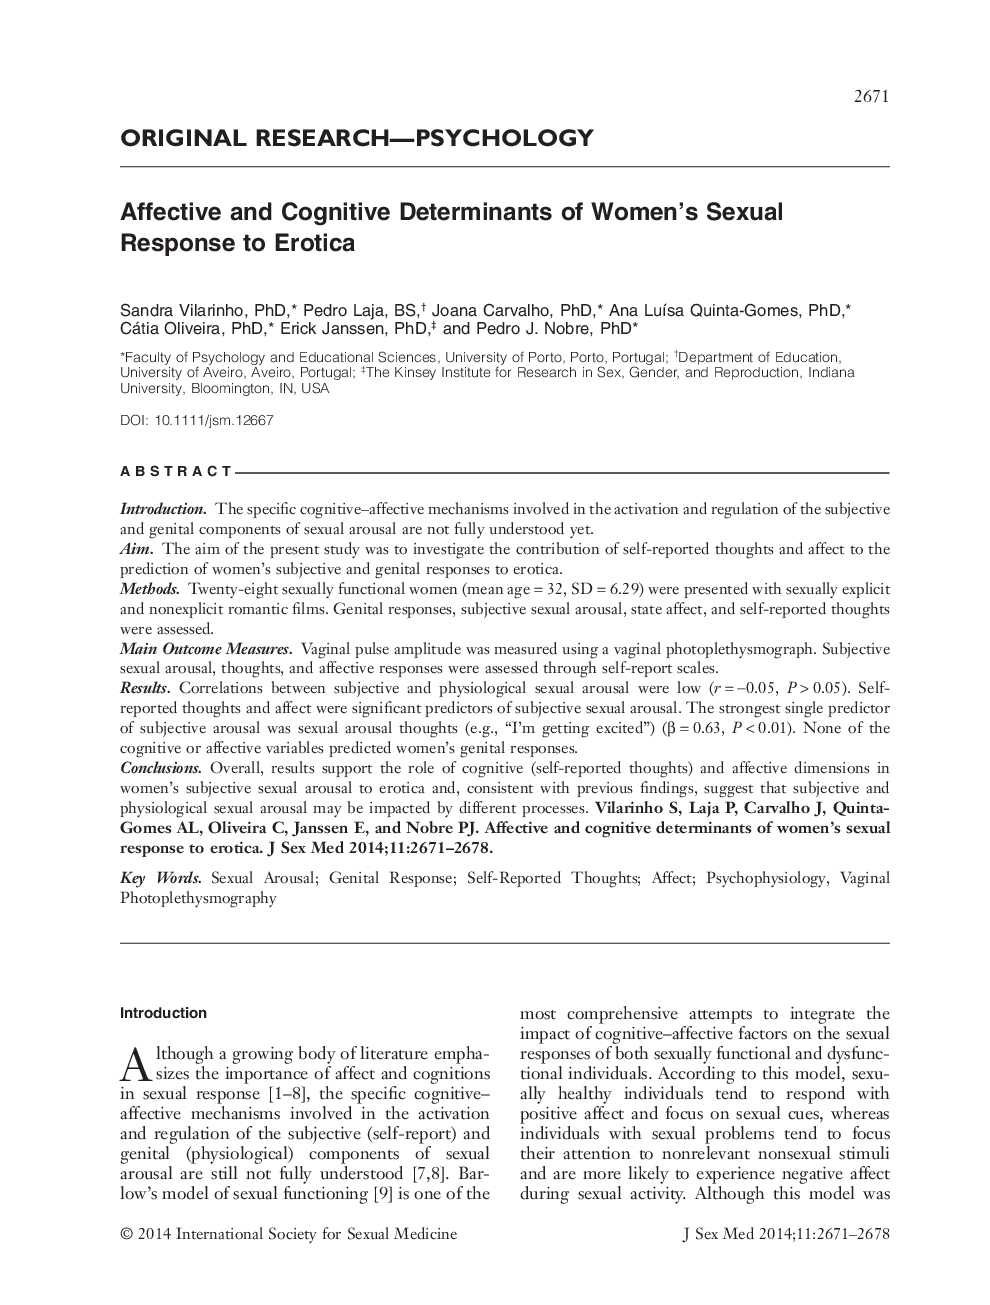 عوامل مؤثر و شناختی پاسخ جنسی به عاطفه 